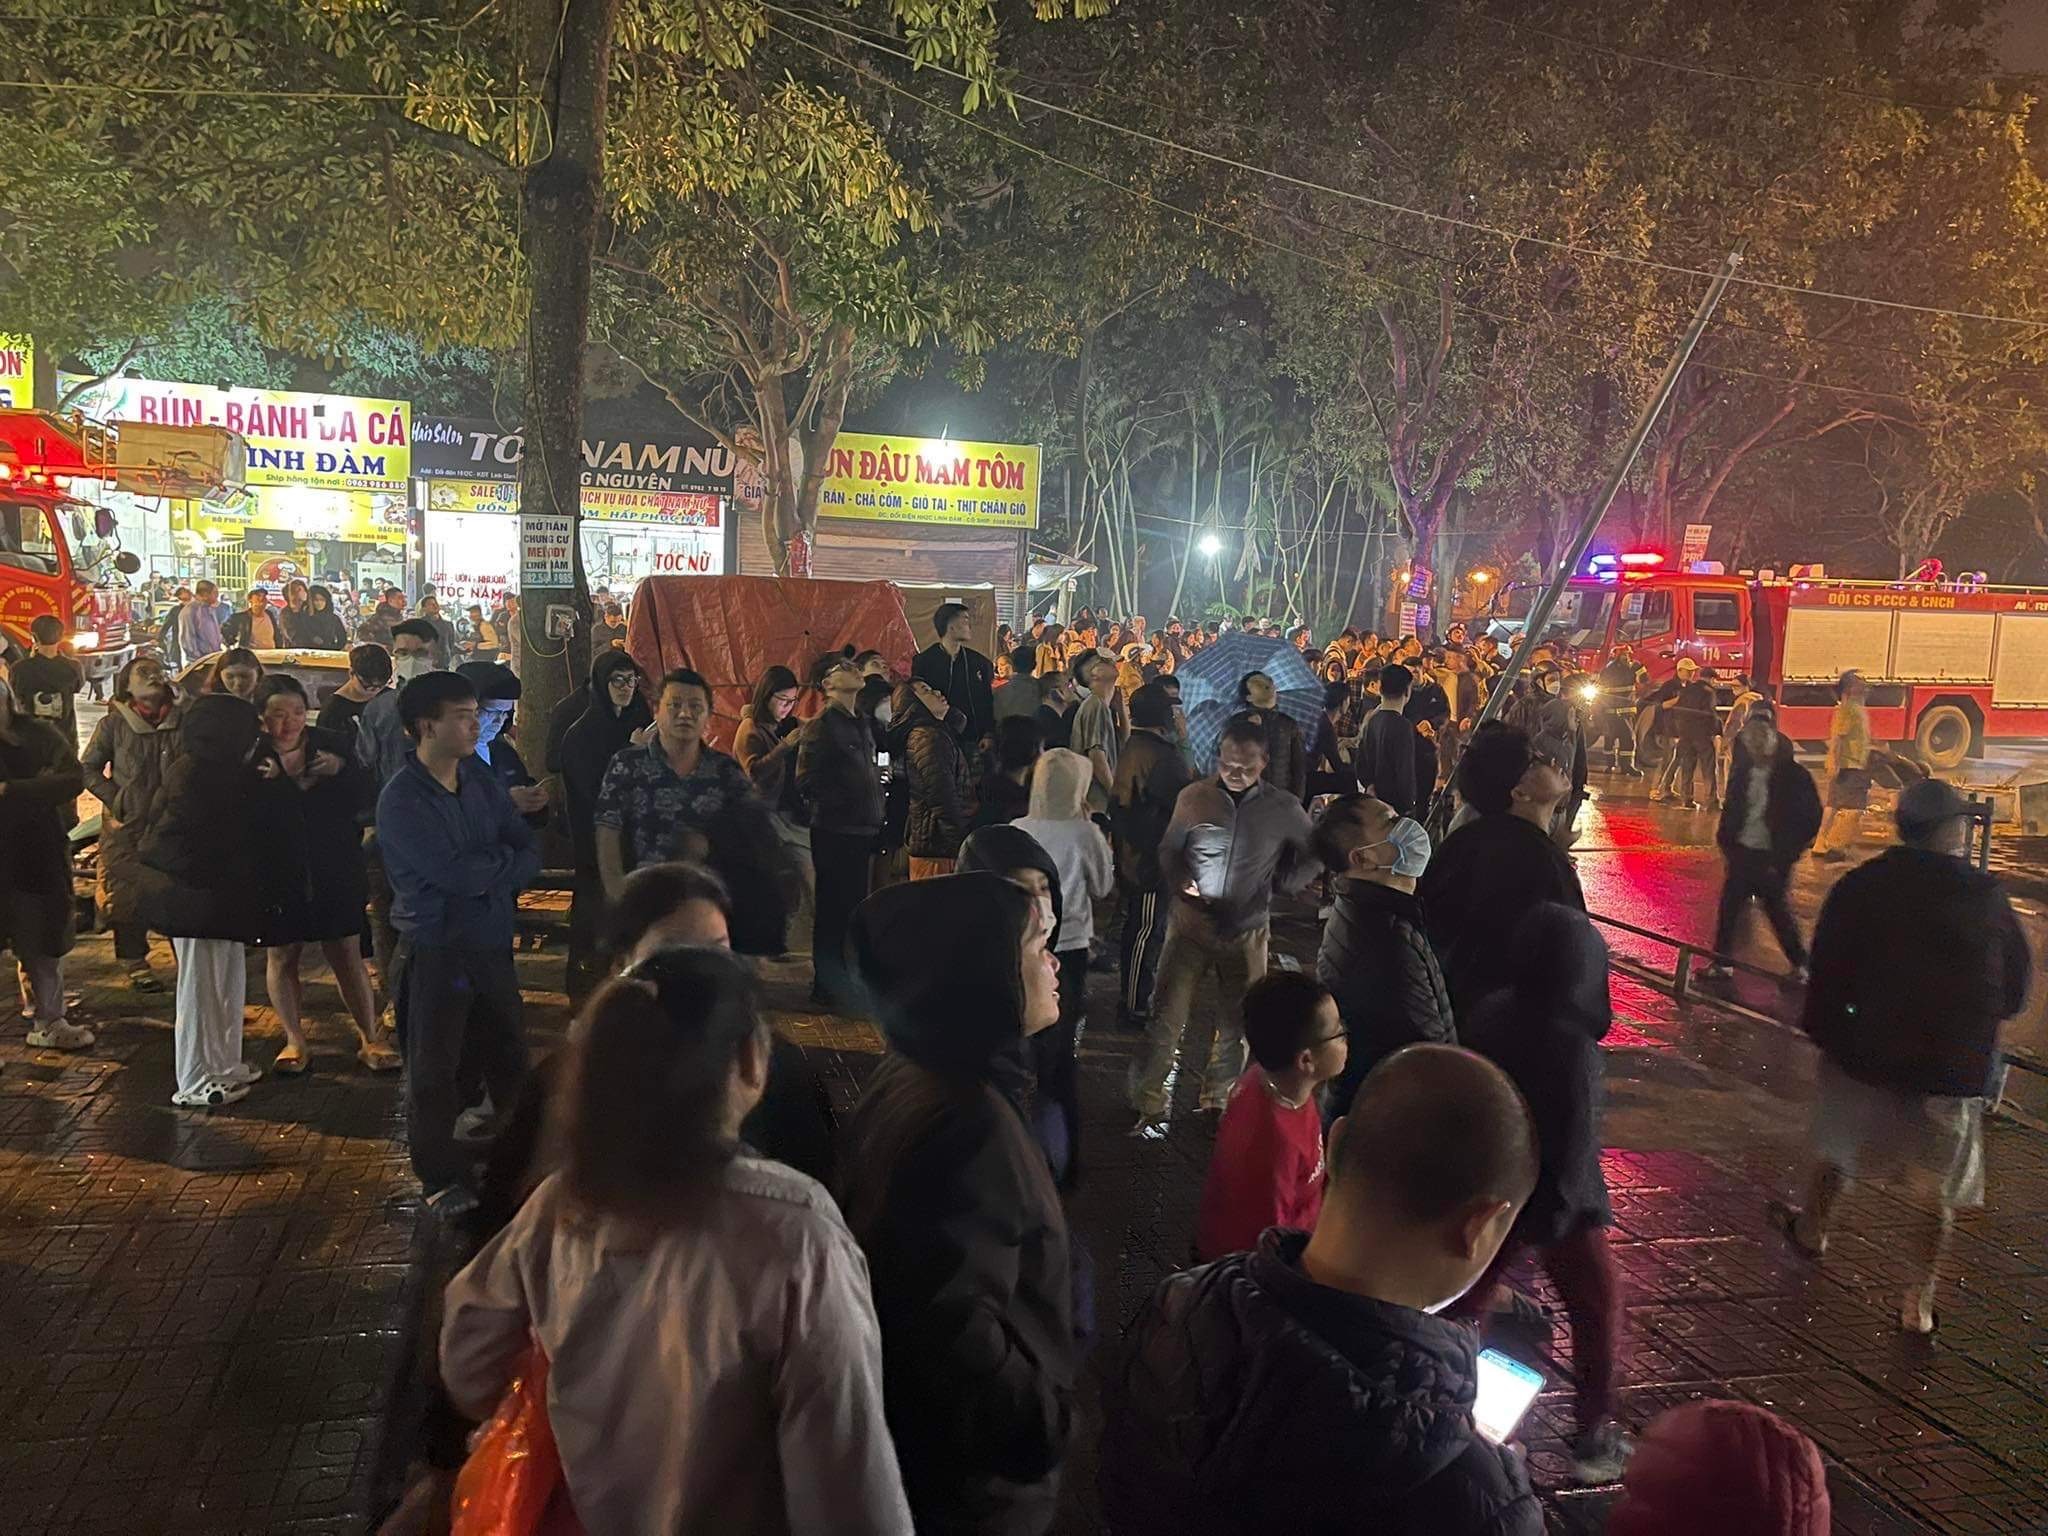 Cháy tầng cao chung cư đông dân nhất Hà Nội, cư dân ôm con tháo chạy - 4